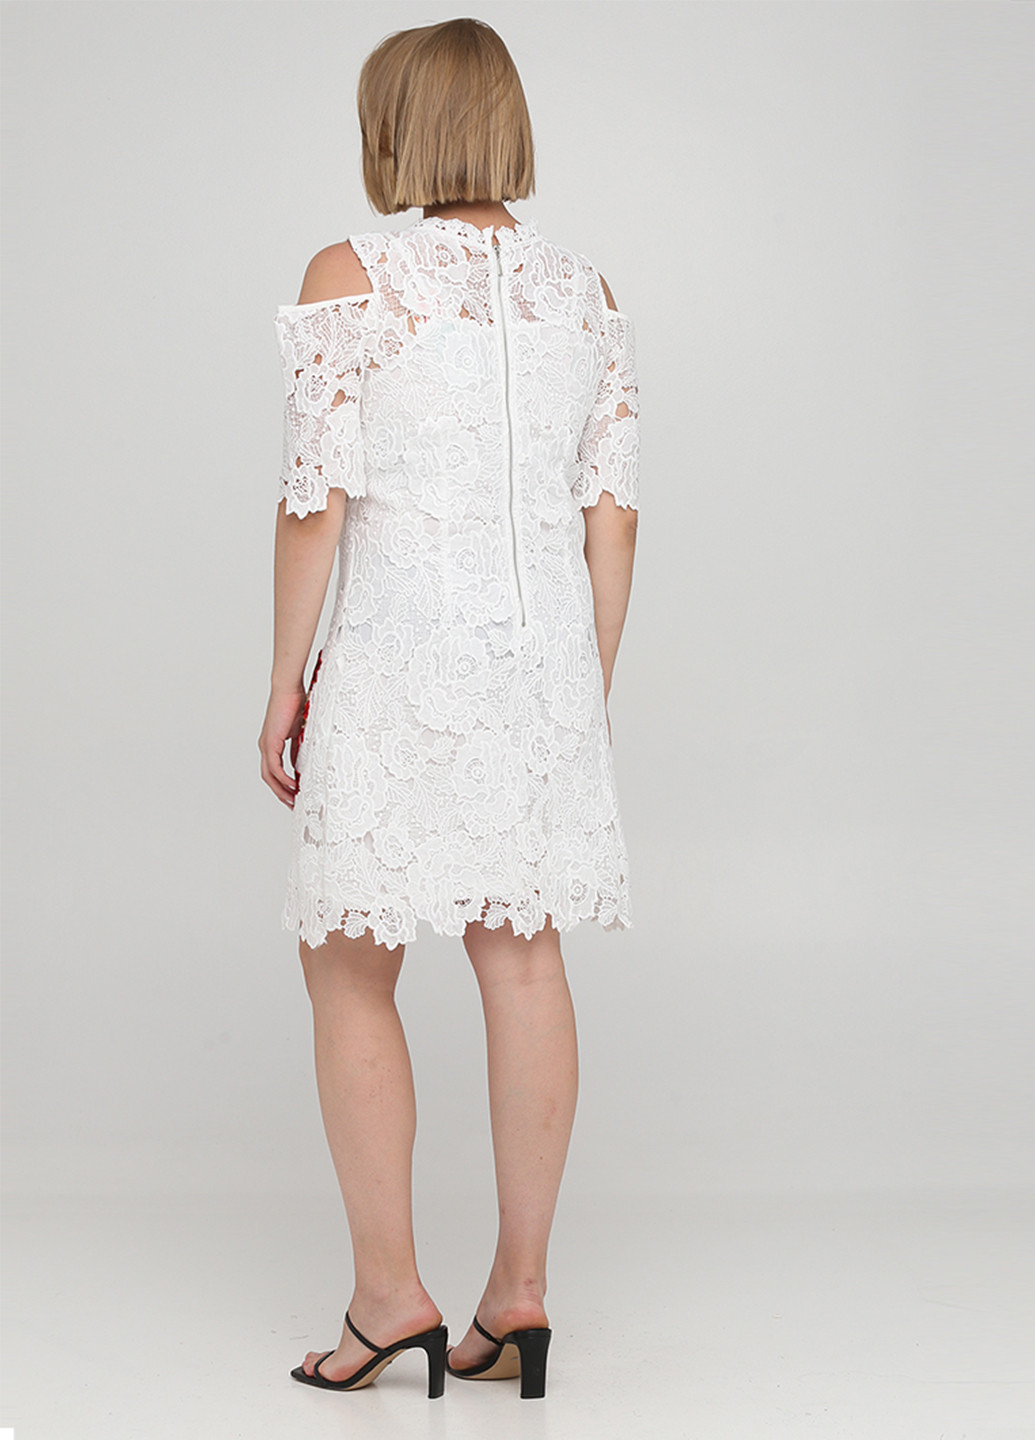 Белое коктейльное платье футляр 101 IDEES с цветочным принтом